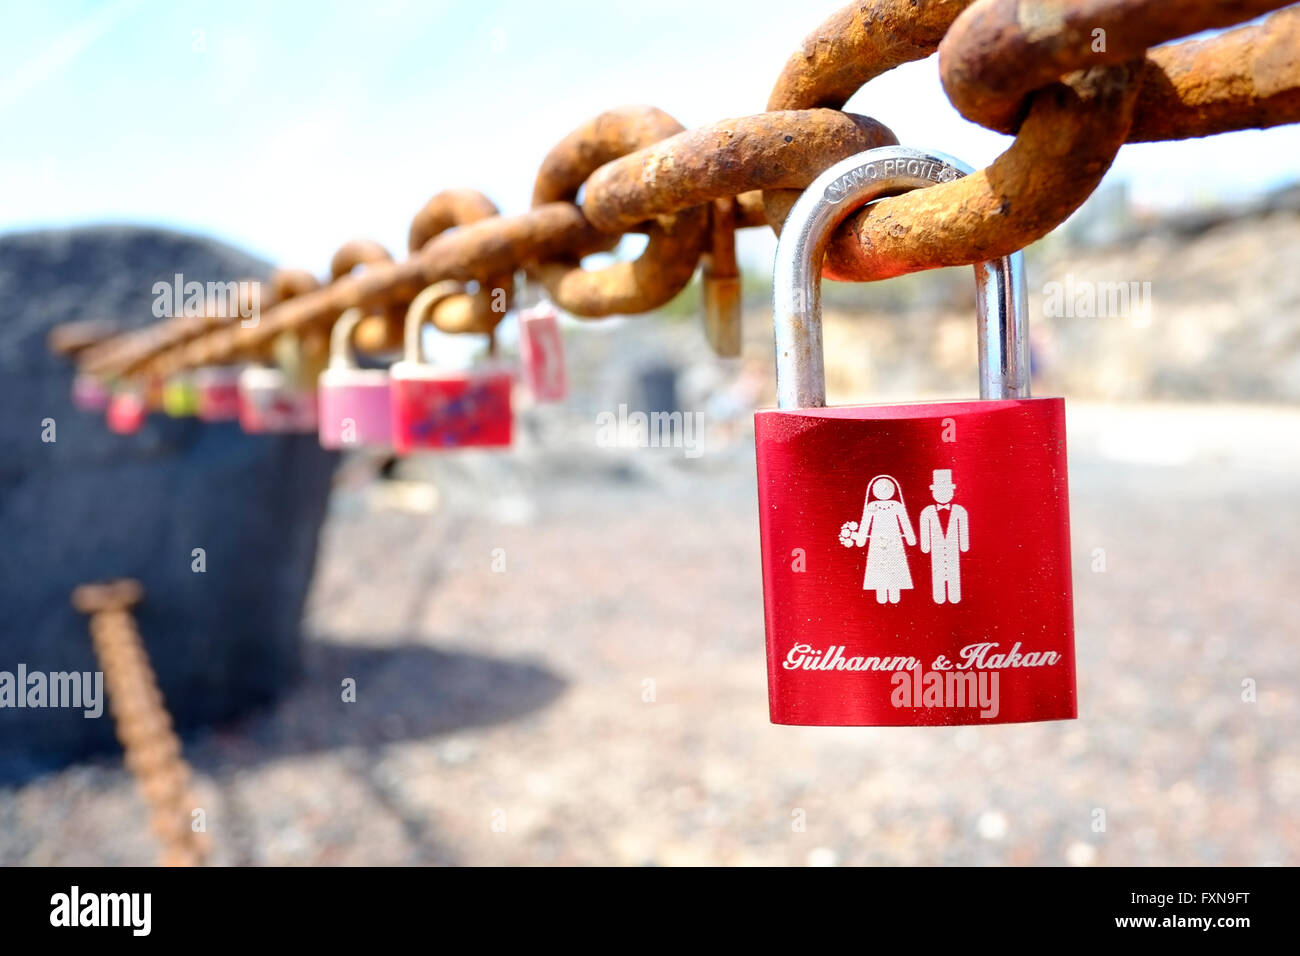 Un amour lock attaché à une chaîne en métal qui célèbre un mariage rail Banque D'Images